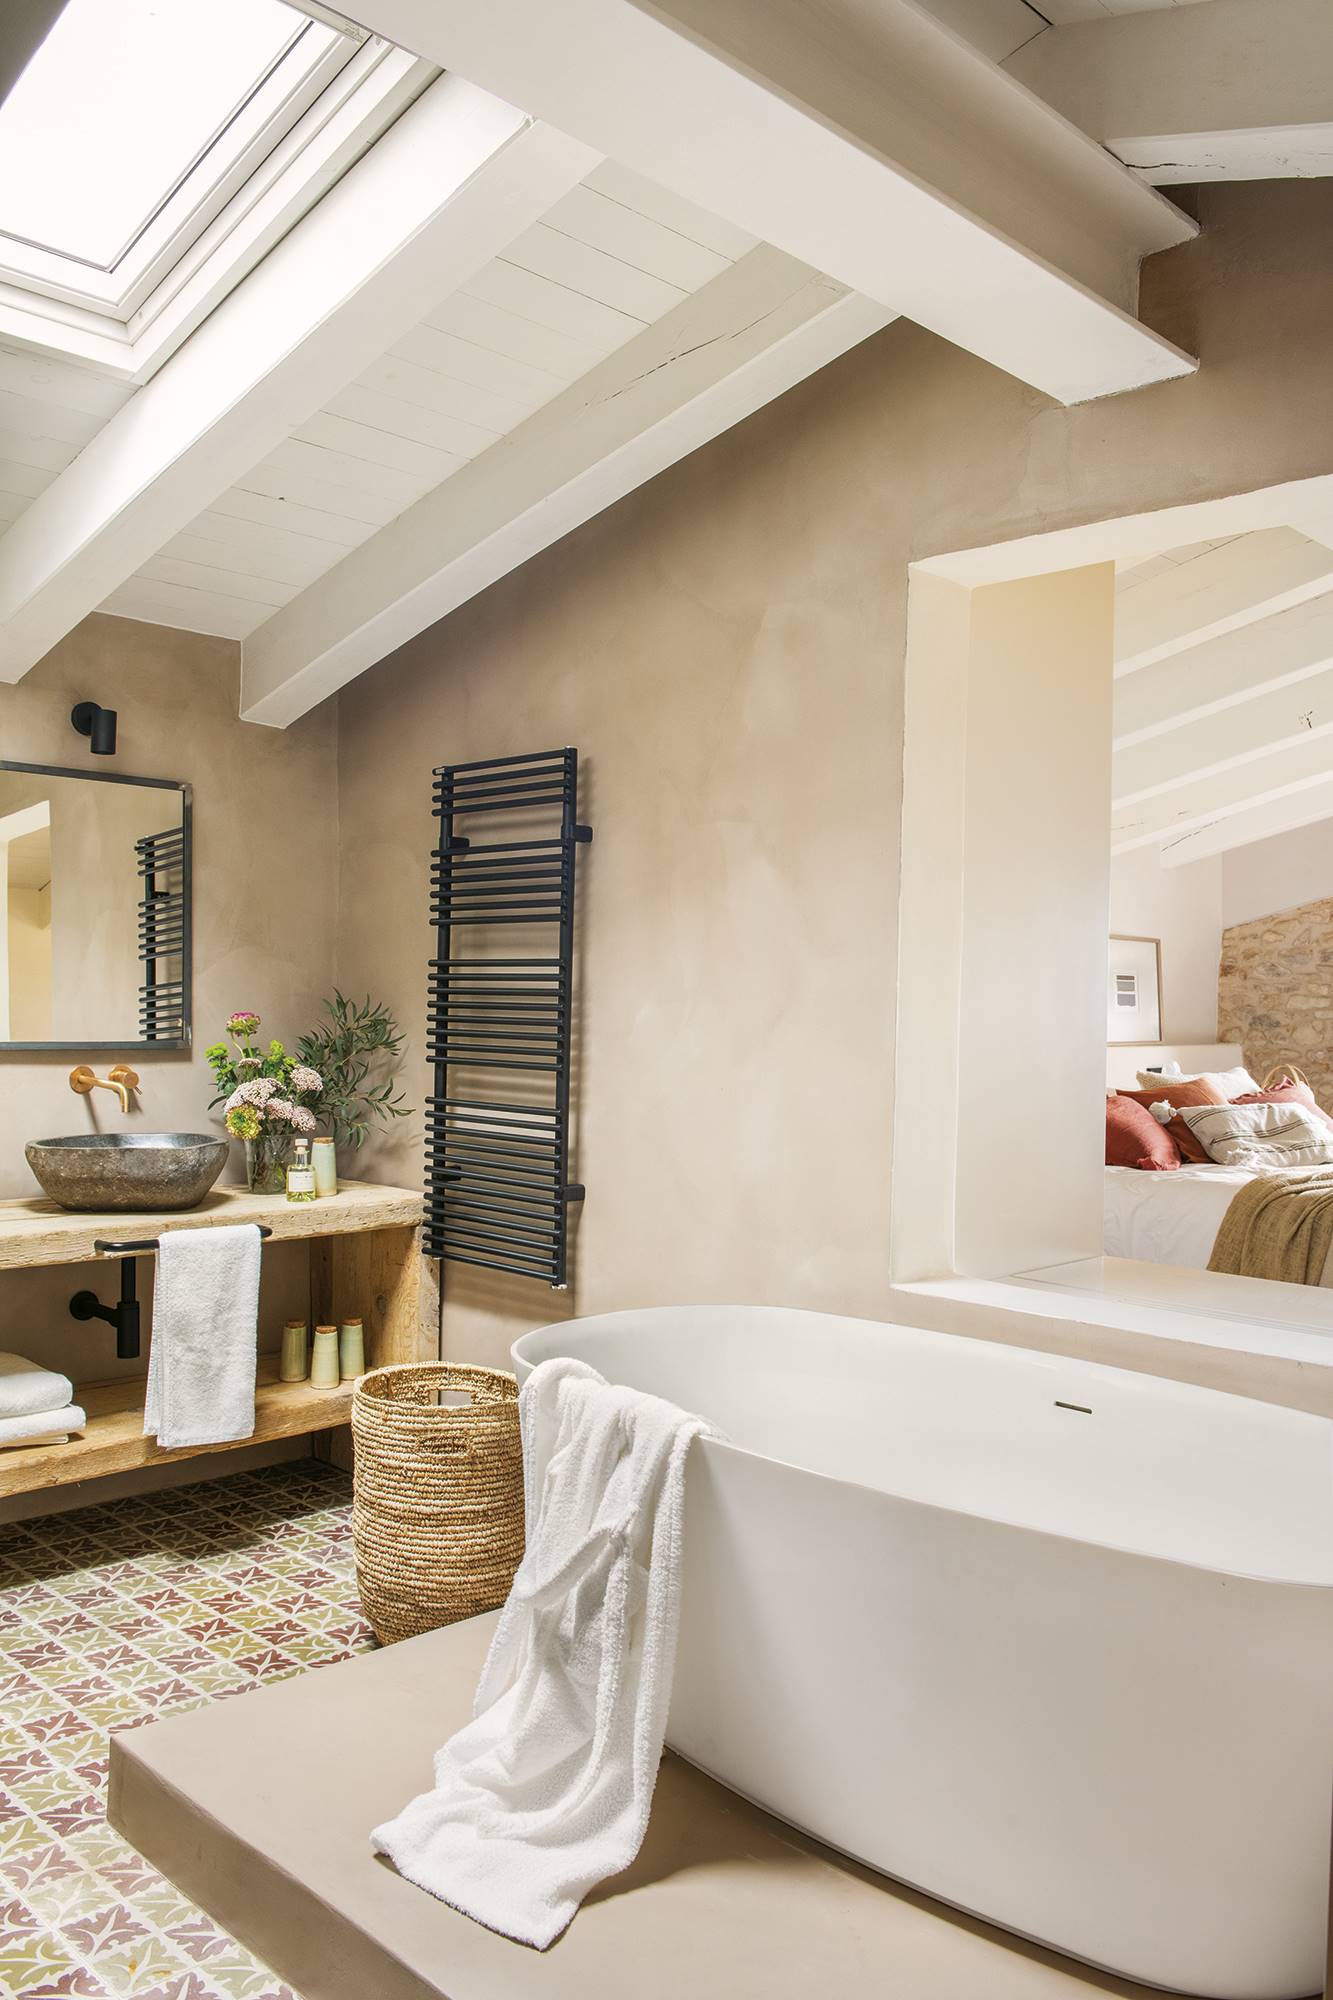 Baño con bañera exenta, azulejos y mueble de madera.